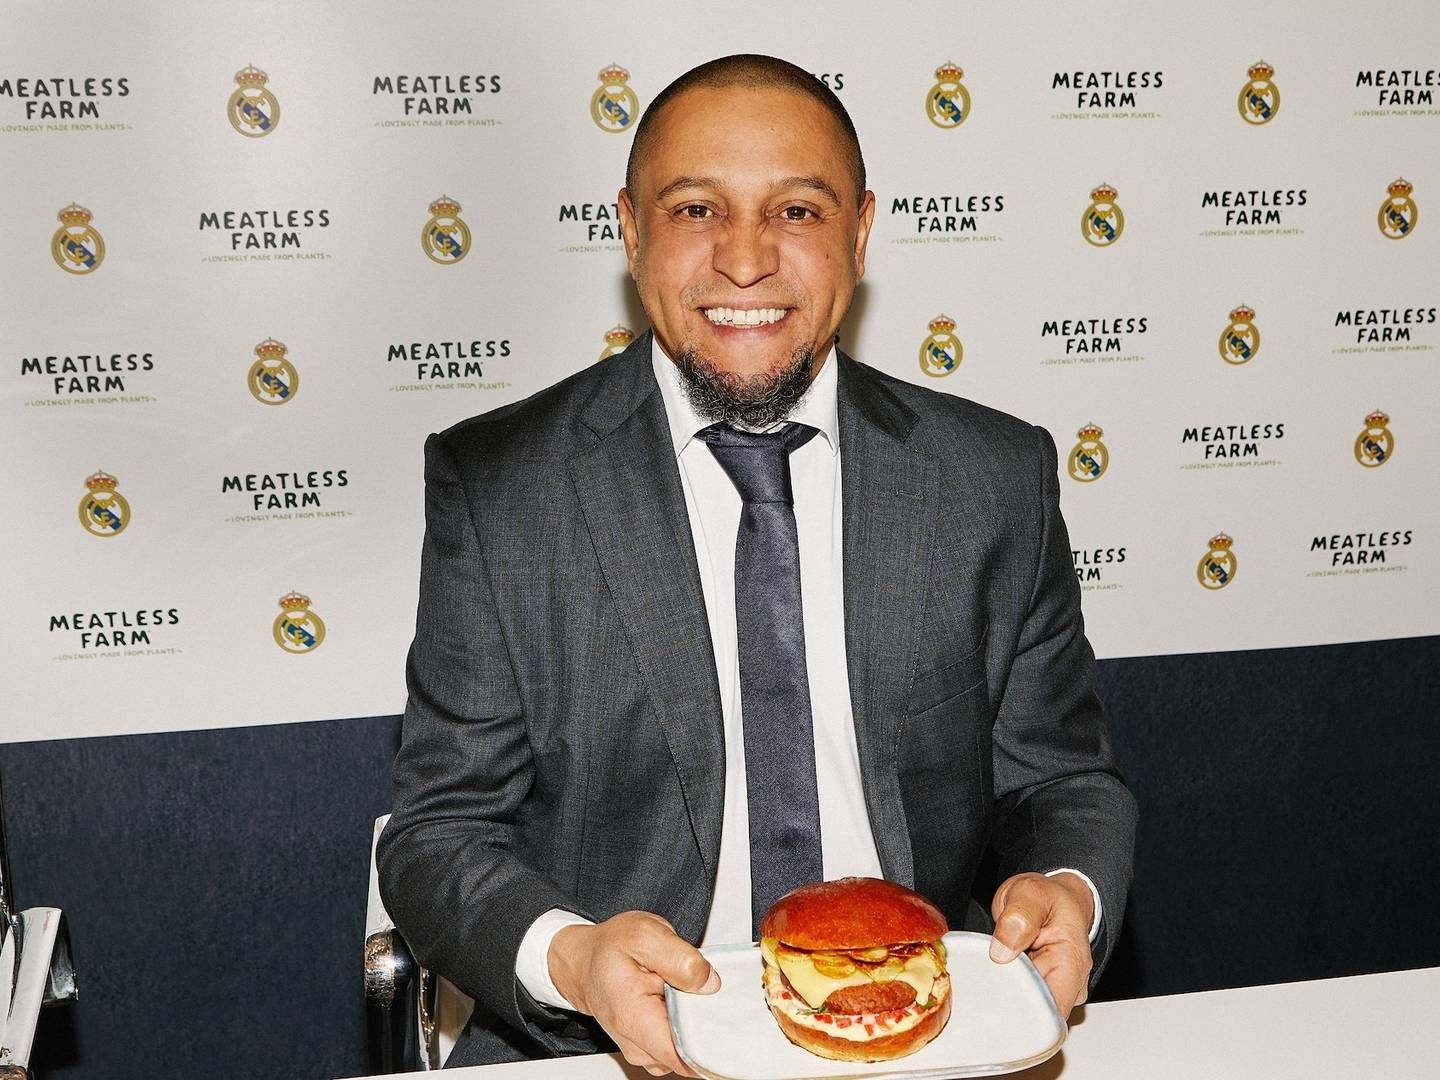 Tidligere Real Madrid-spiller Roberto Carlos med en burger baseret på Meatless Farms plantebaserede alternativ. Det er ikke klart, hvad hans rolle er i samarbejdet. | Foto: PR / Meatless Farm